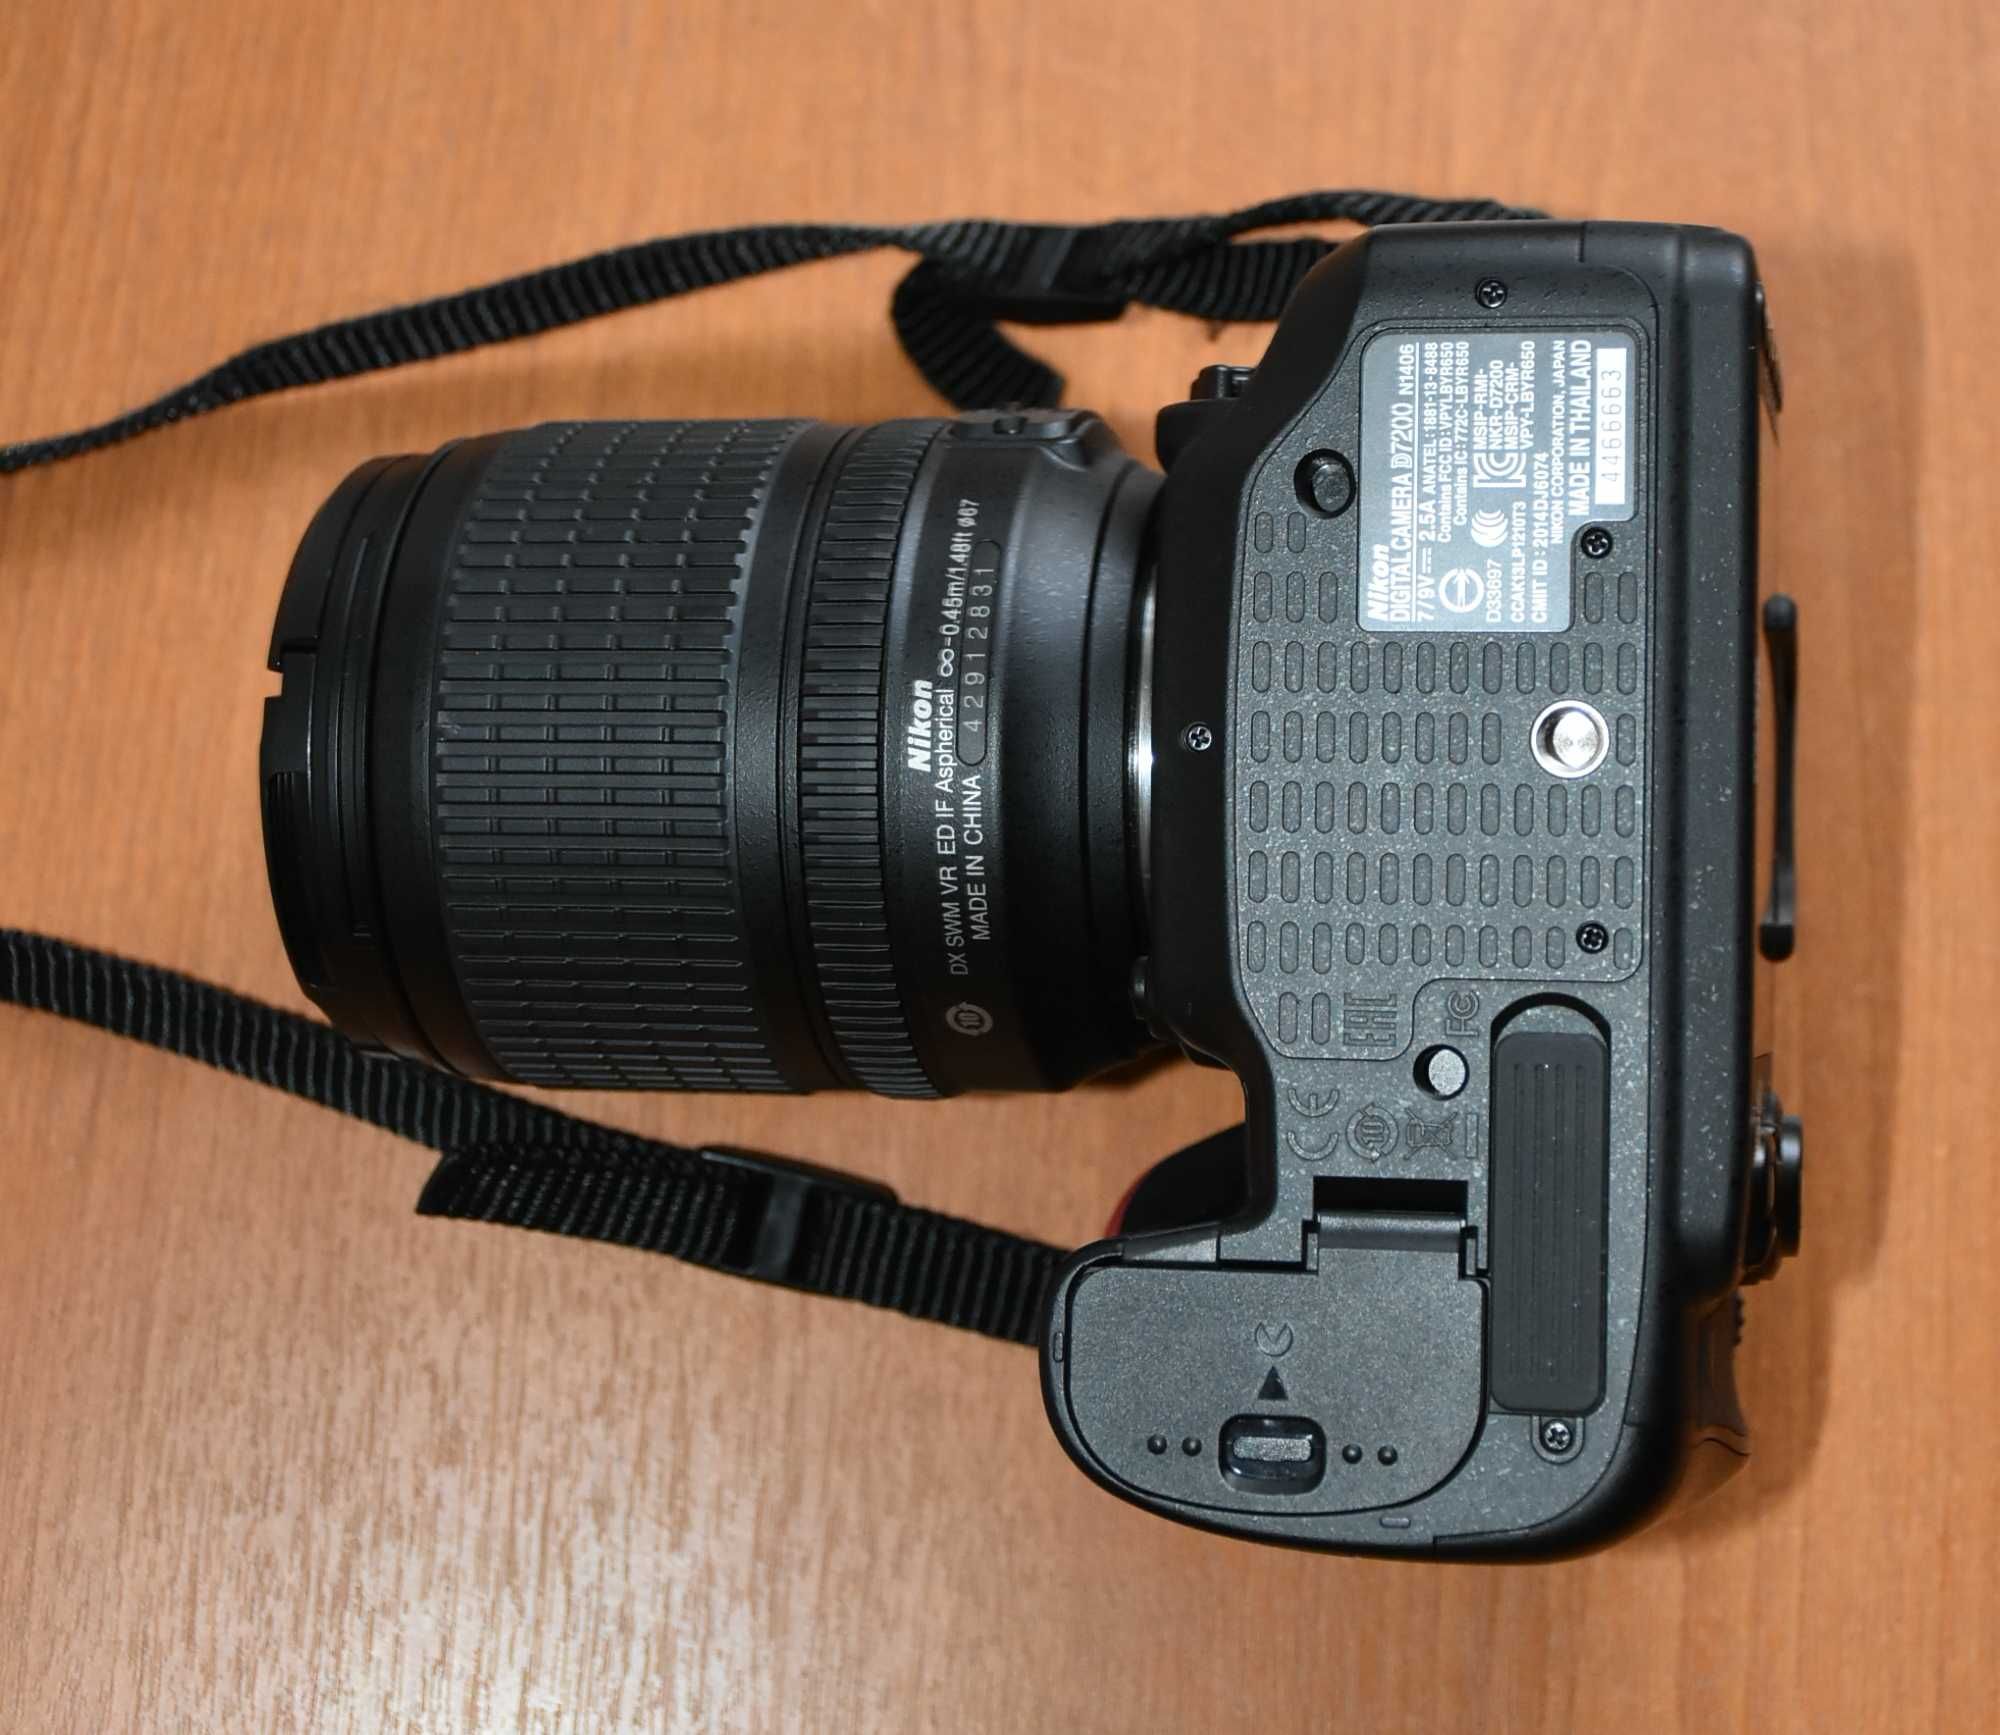 Nikon D7200 + 18-105VR+Torba + ZESTAW FABRYCZNY - 1000 ZDJĘĆ - IDEALNY